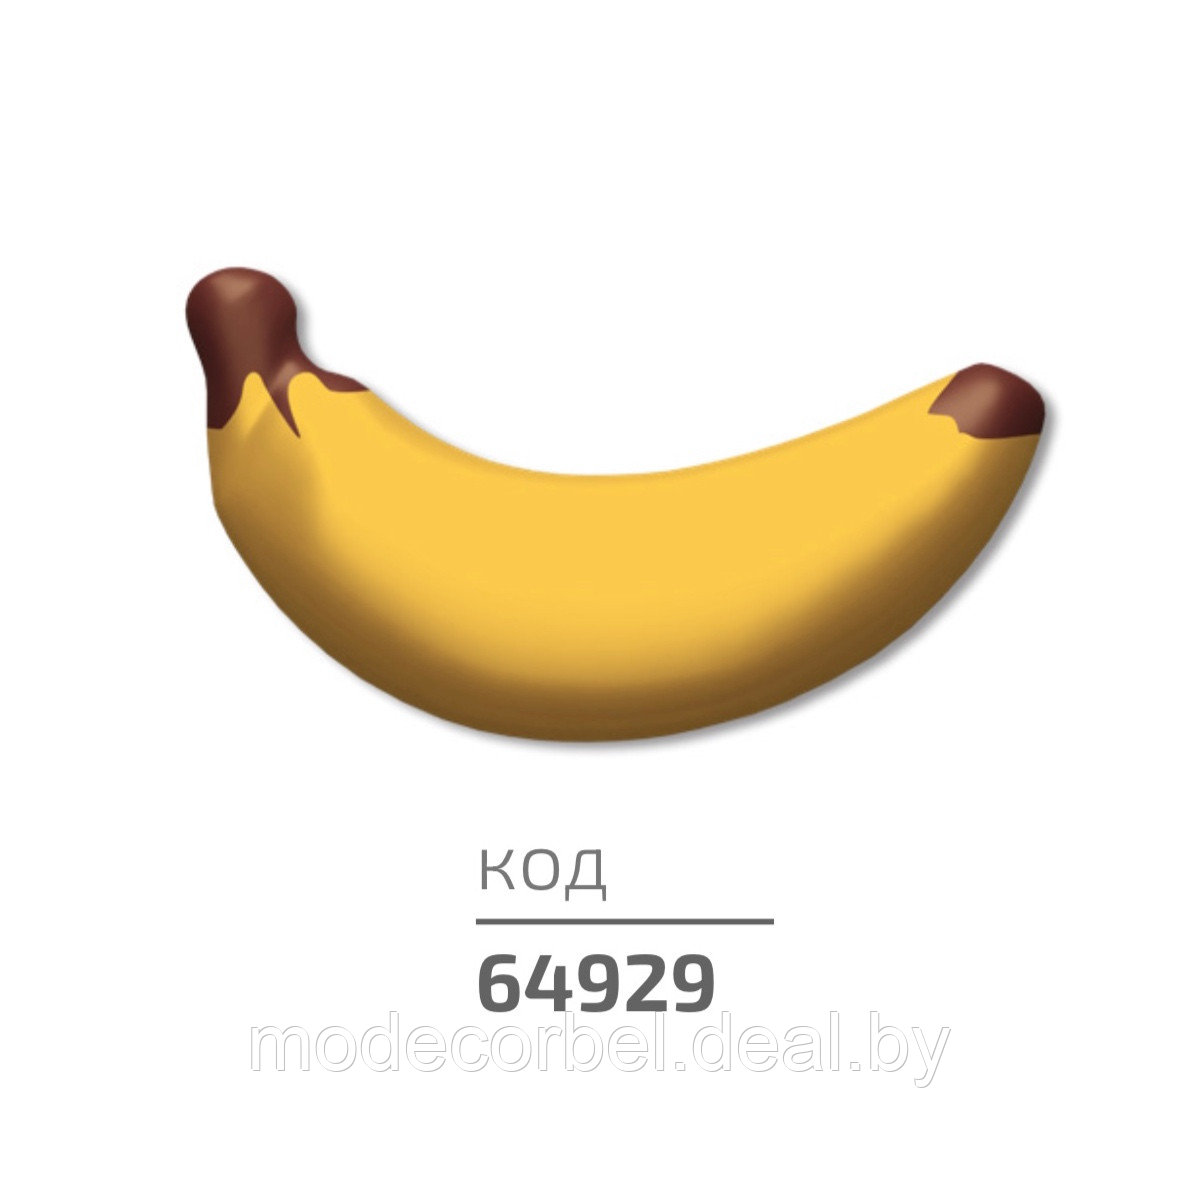 Украшение на основе кондитерской массы "Банан"